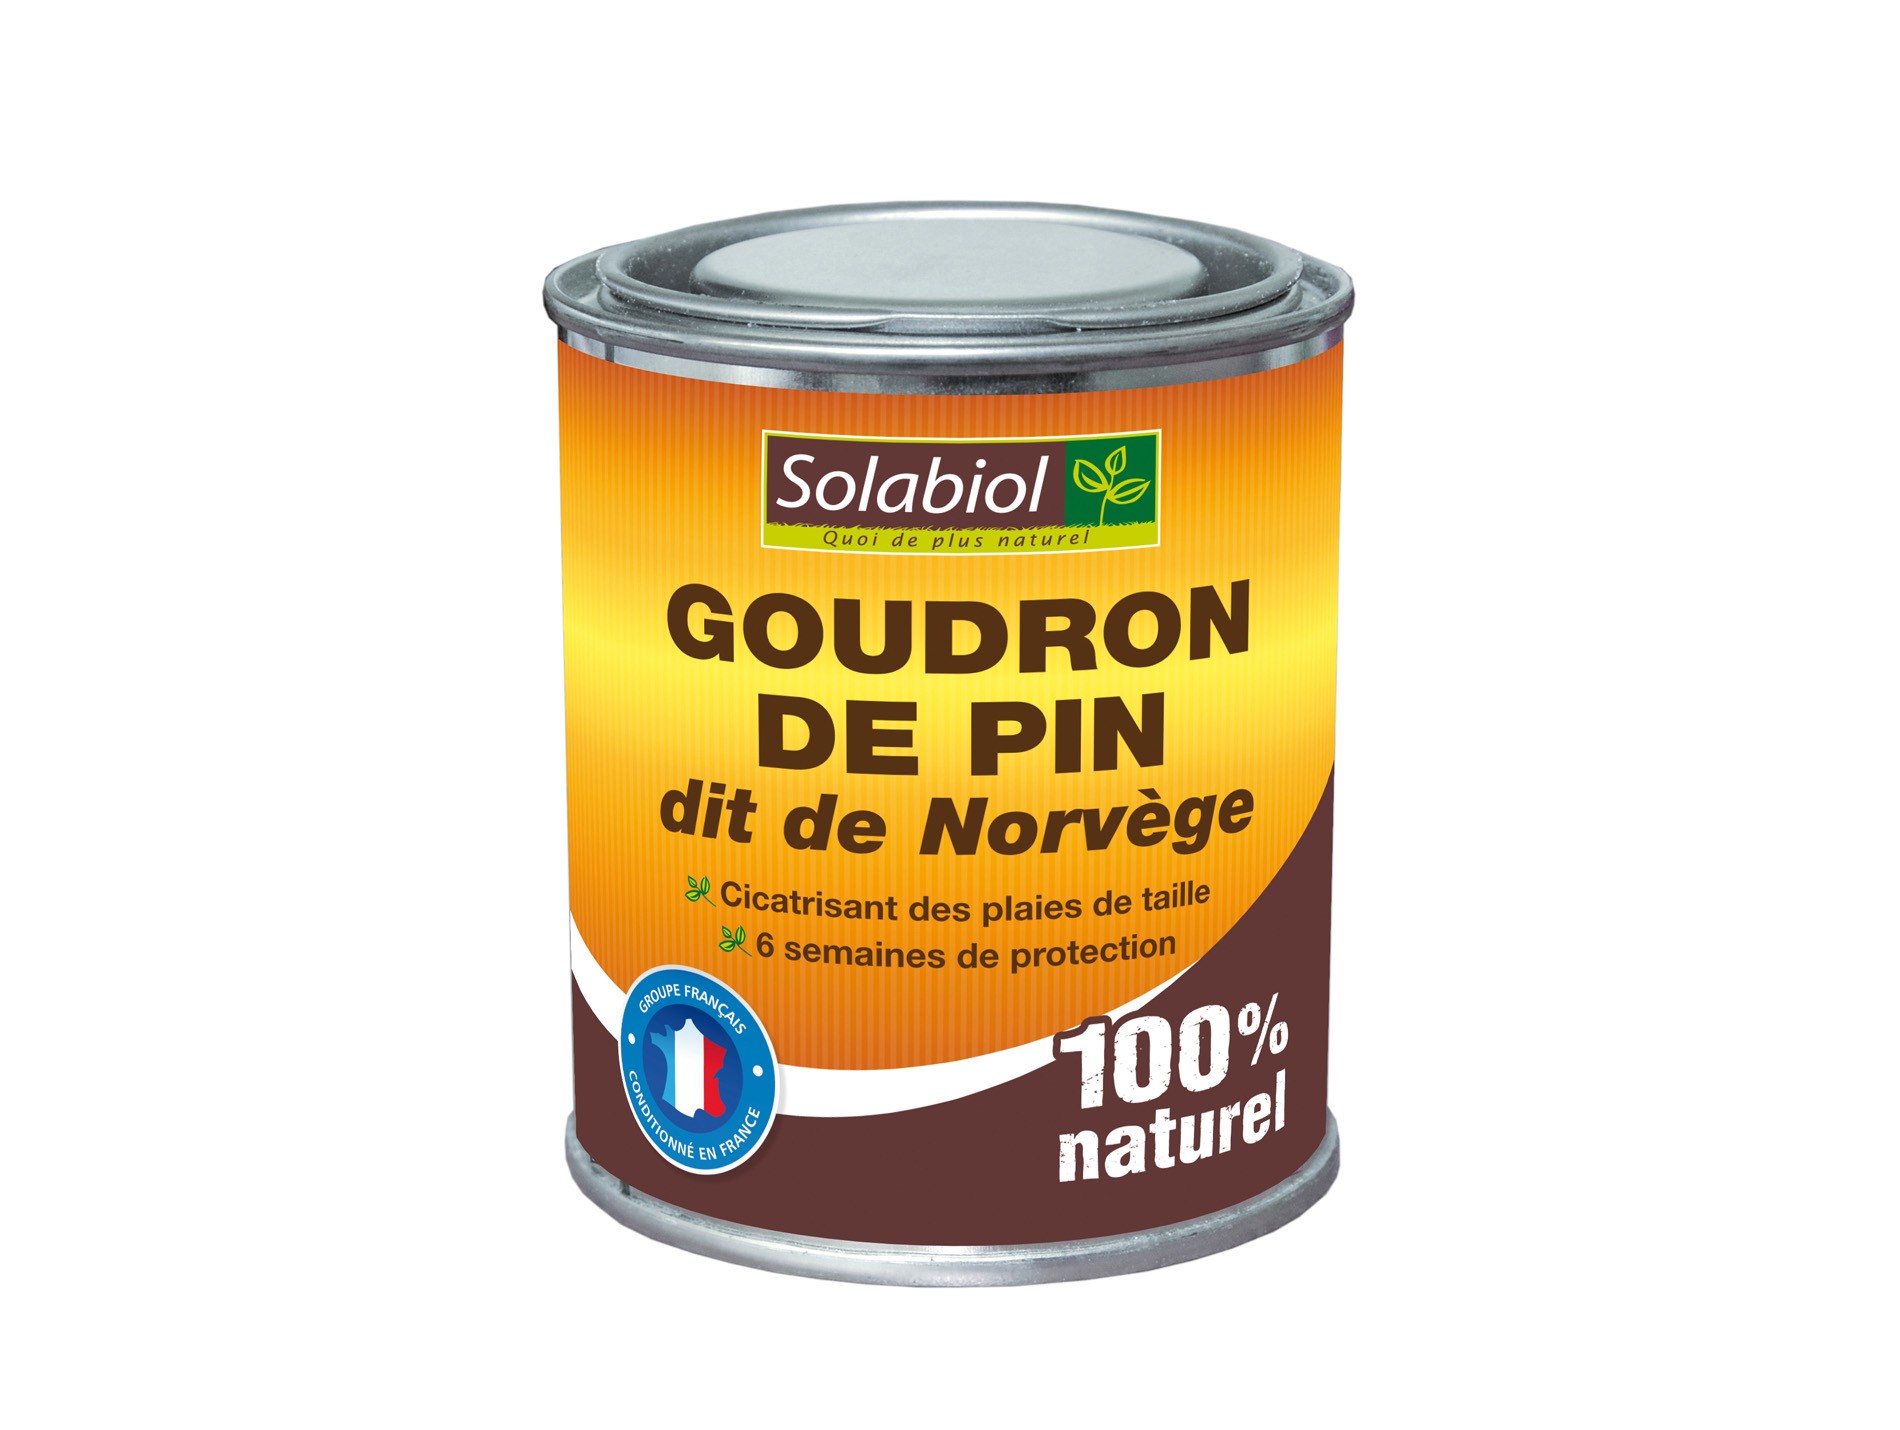 GOUDRON DE PIN dit de Norvège 600 g - Solabiol - Vebaflor